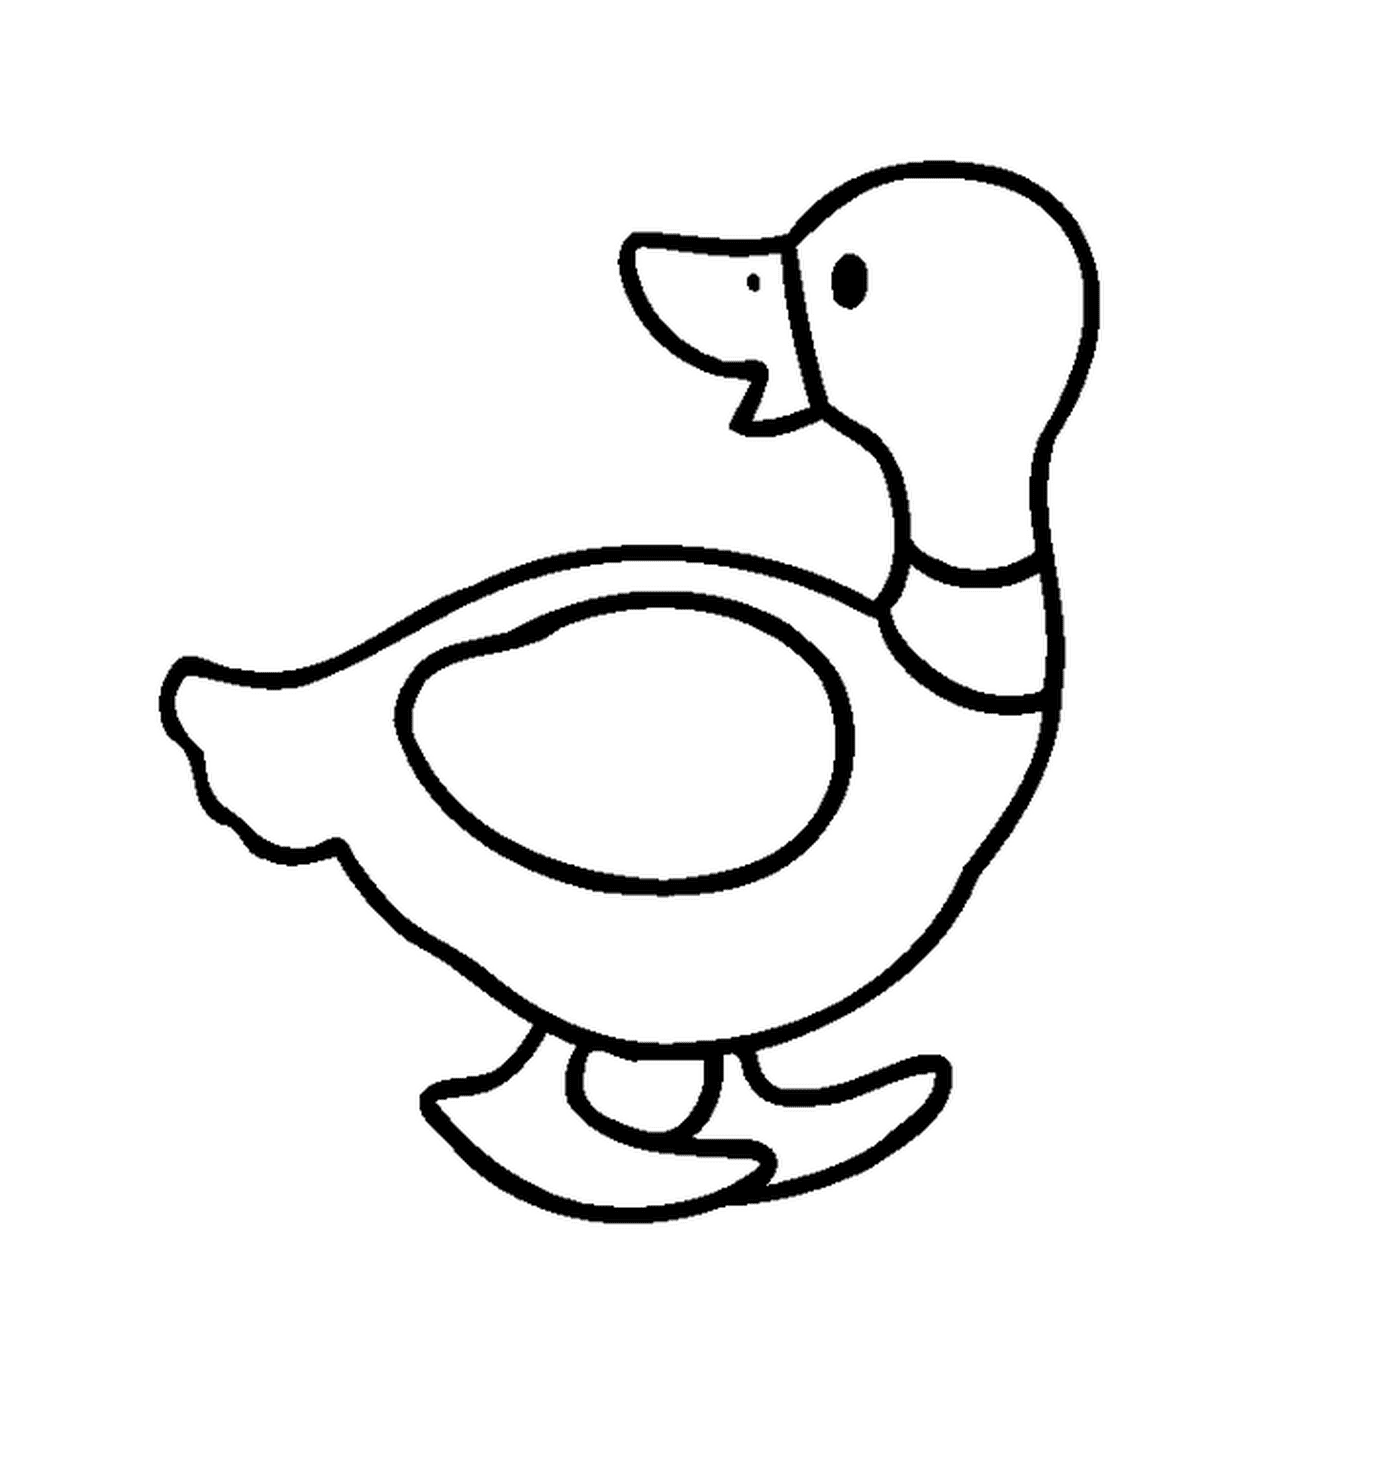  Un pato 